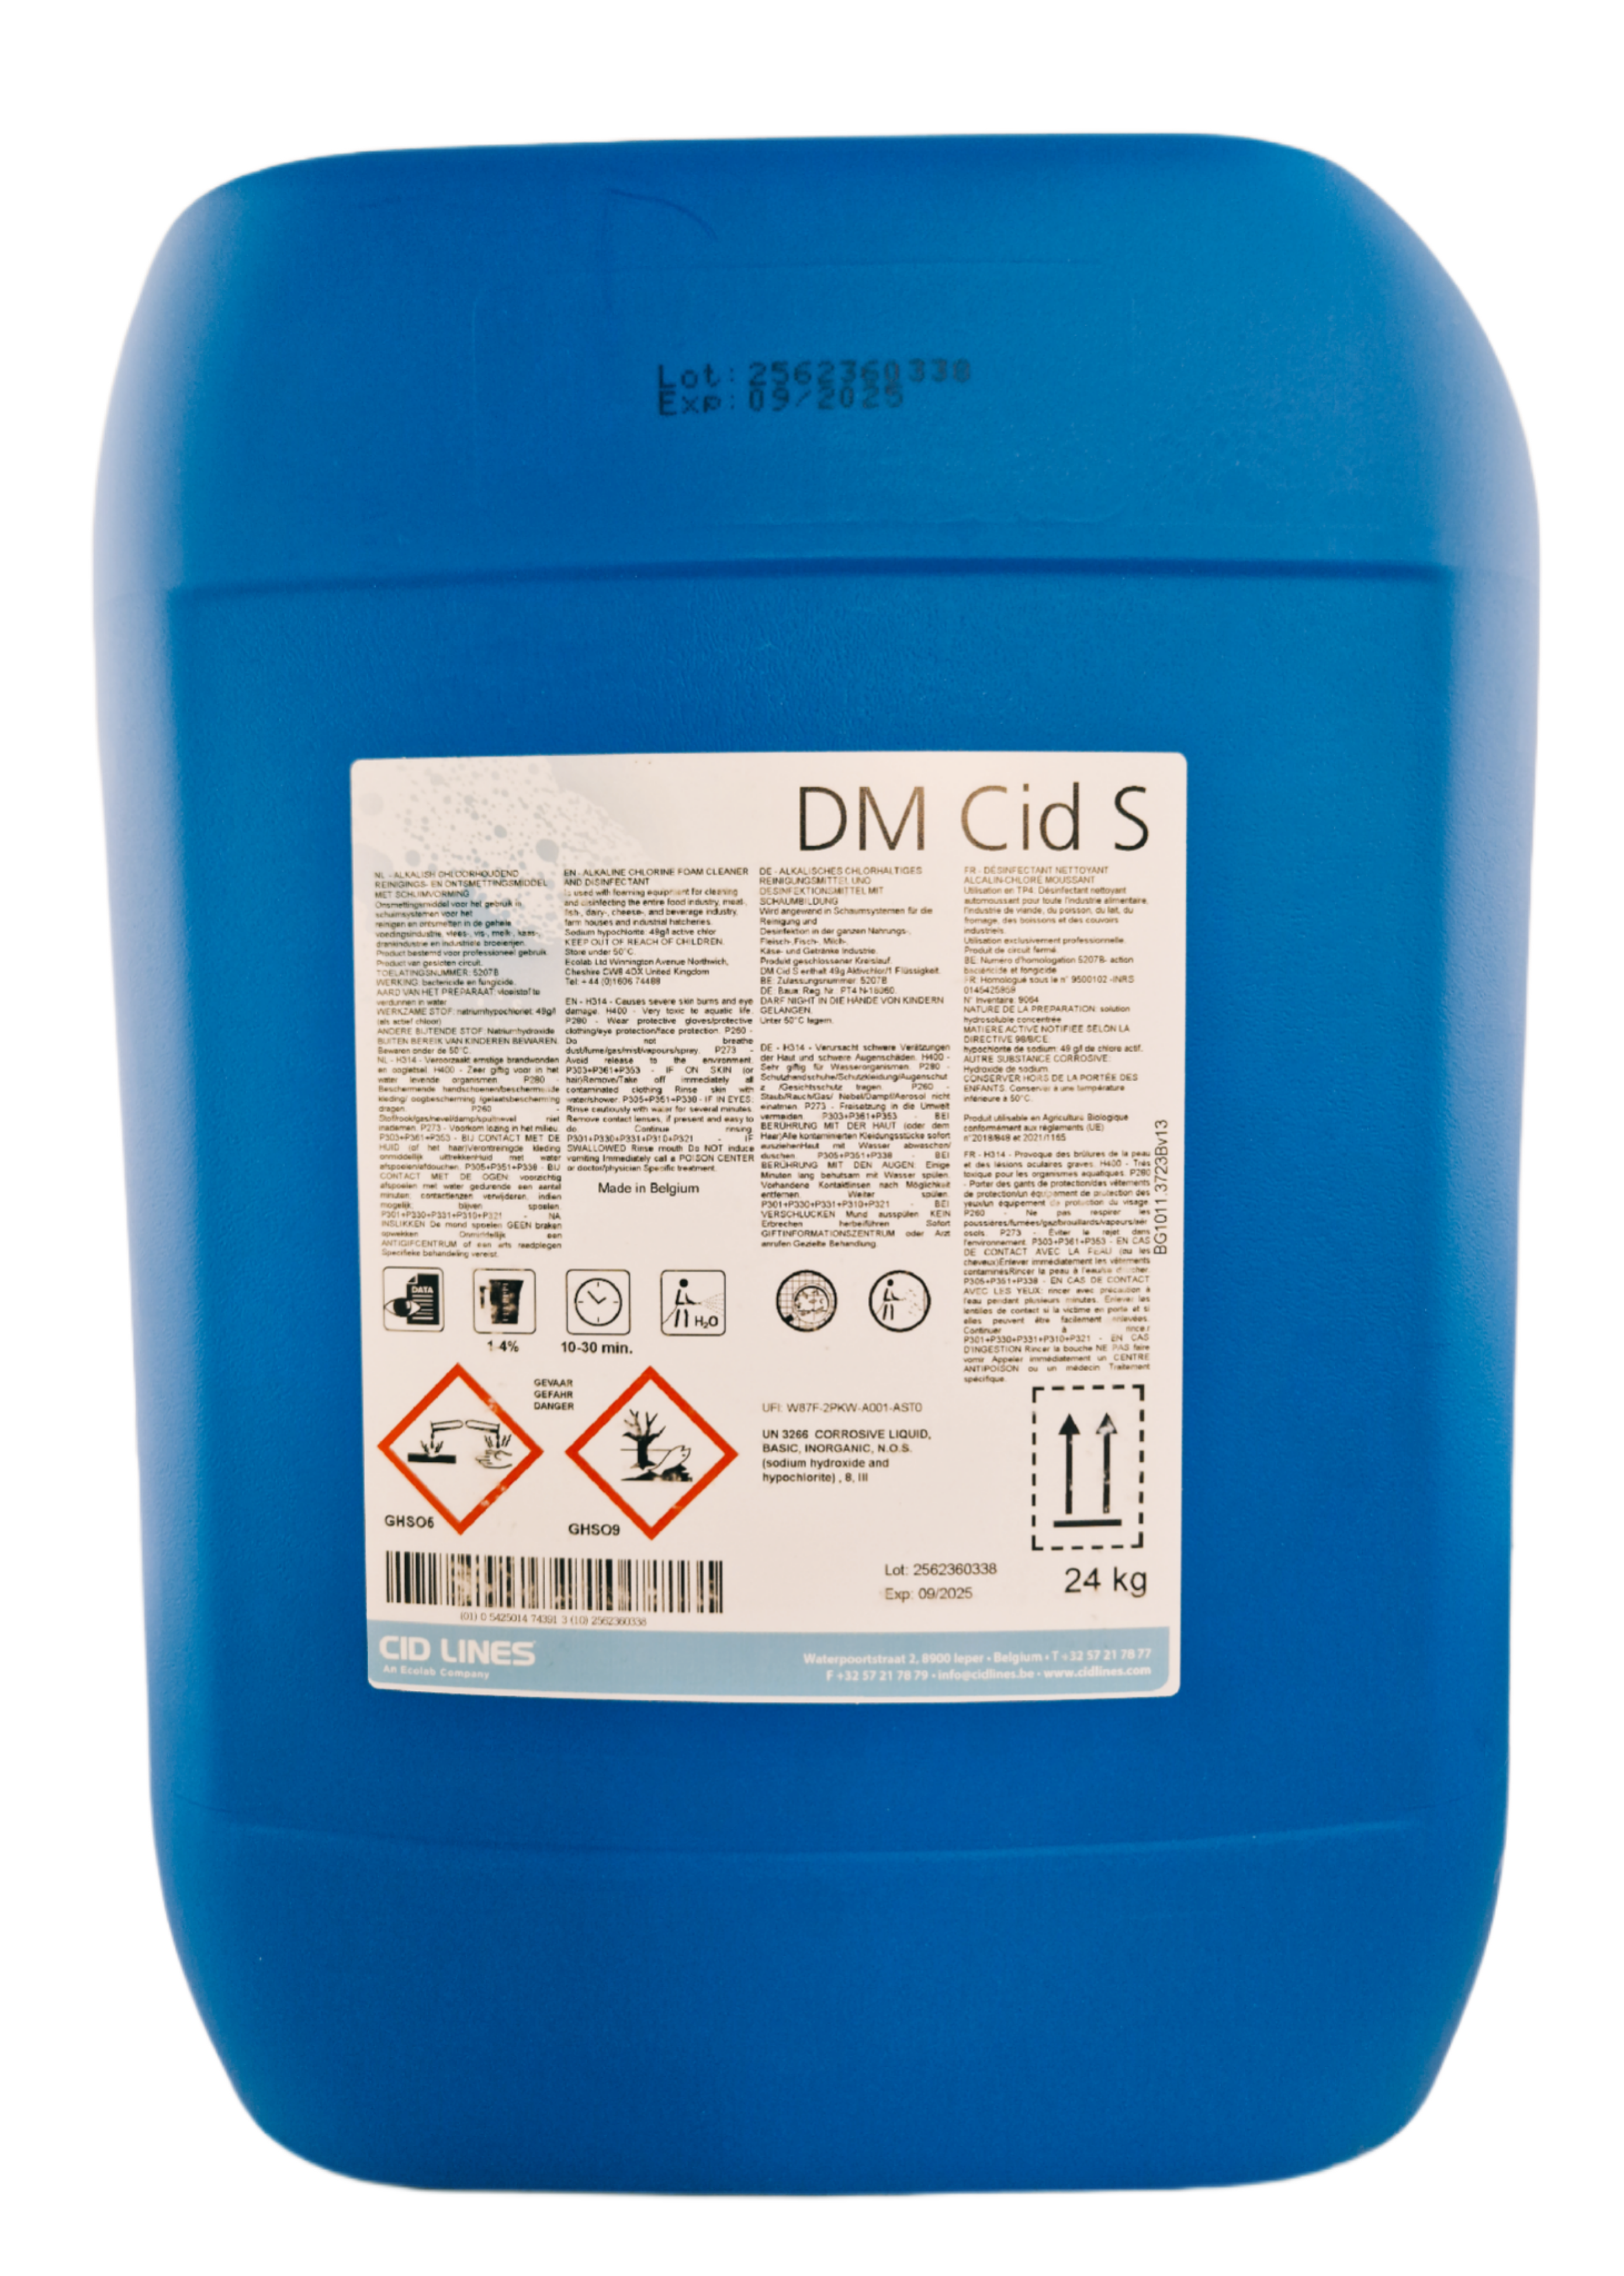 Cid Lines - DM CID S Schaumreinigungs- und Desinfektionsmittel